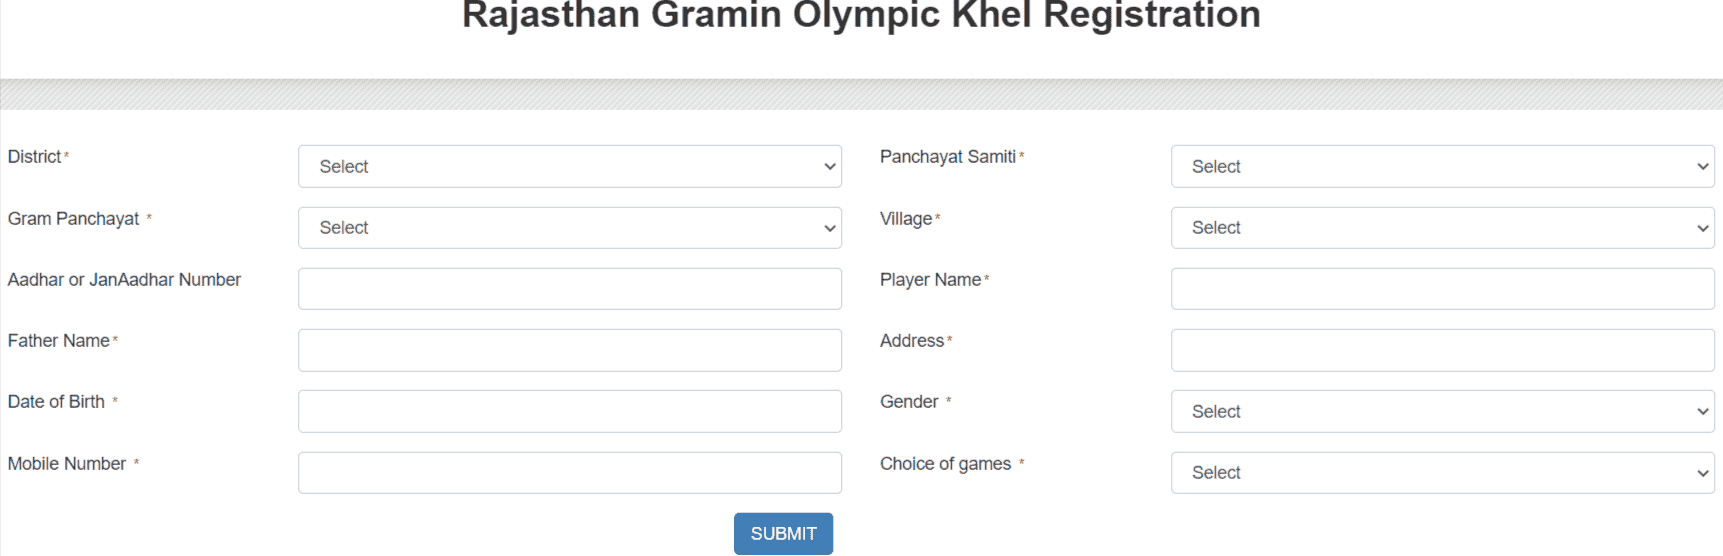 Rajasthan-Gramin-Olympic-Khel-Online-Registration-Form